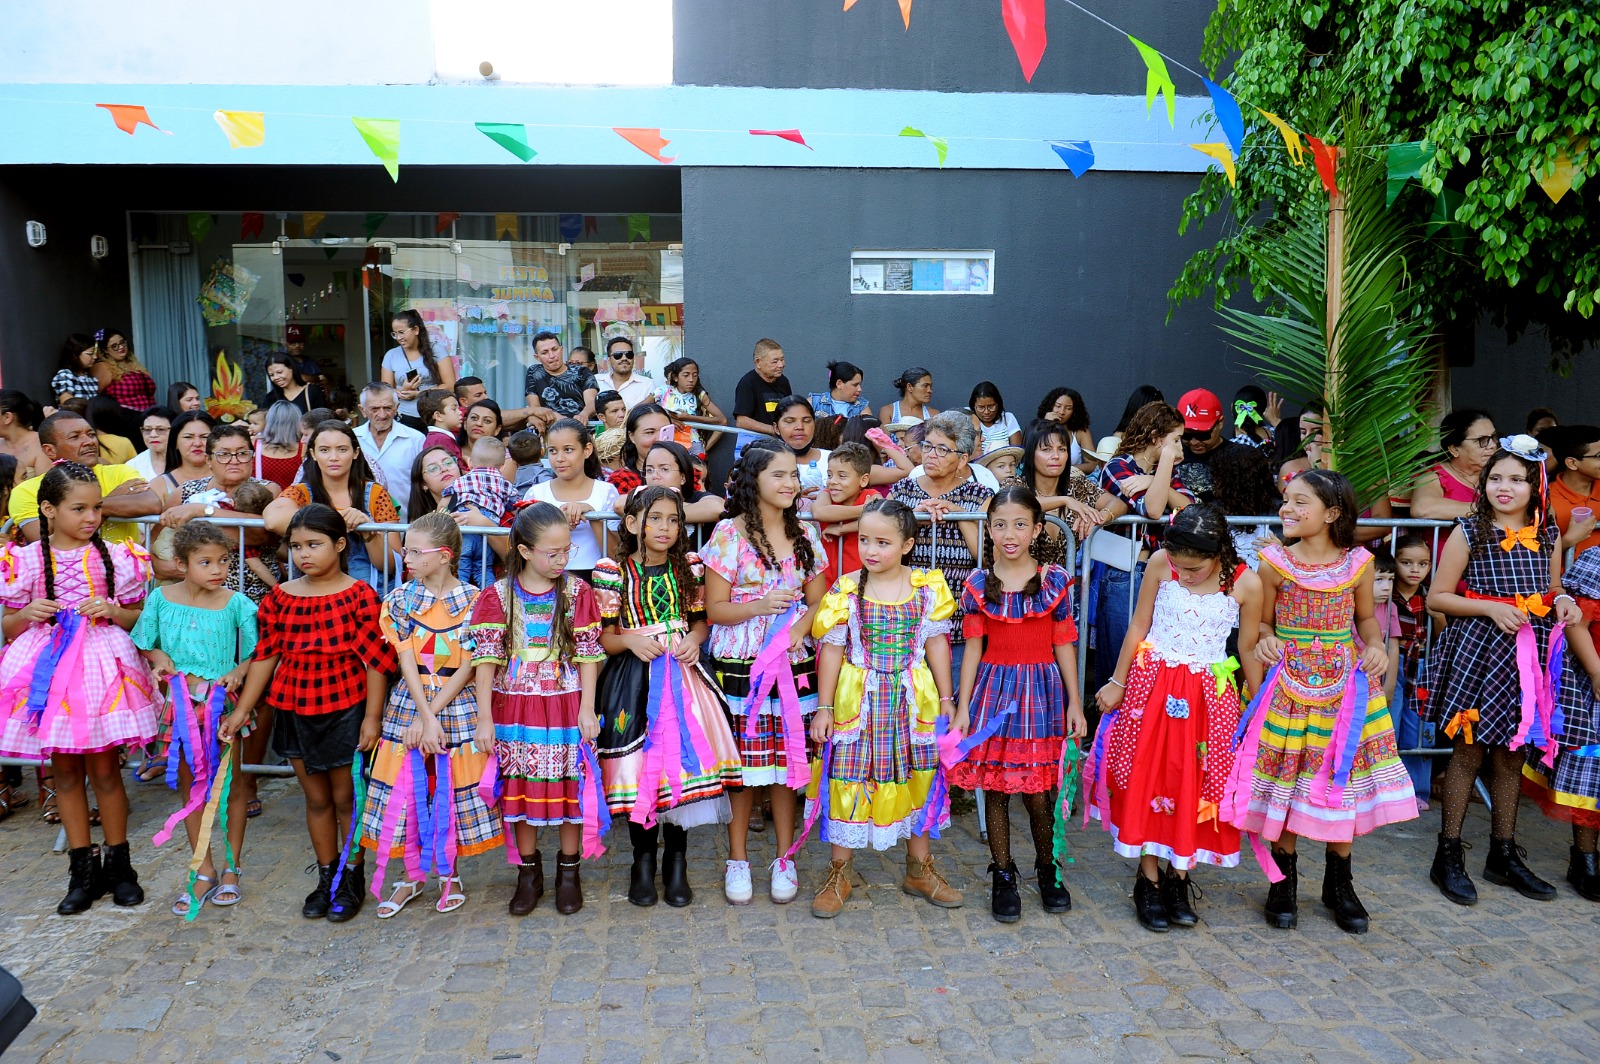 Festival-Quadrilhas-Escolares-7 Retorno às atividades: Festival de Quadrilhas movimenta comunidade escolar e atrai grande público